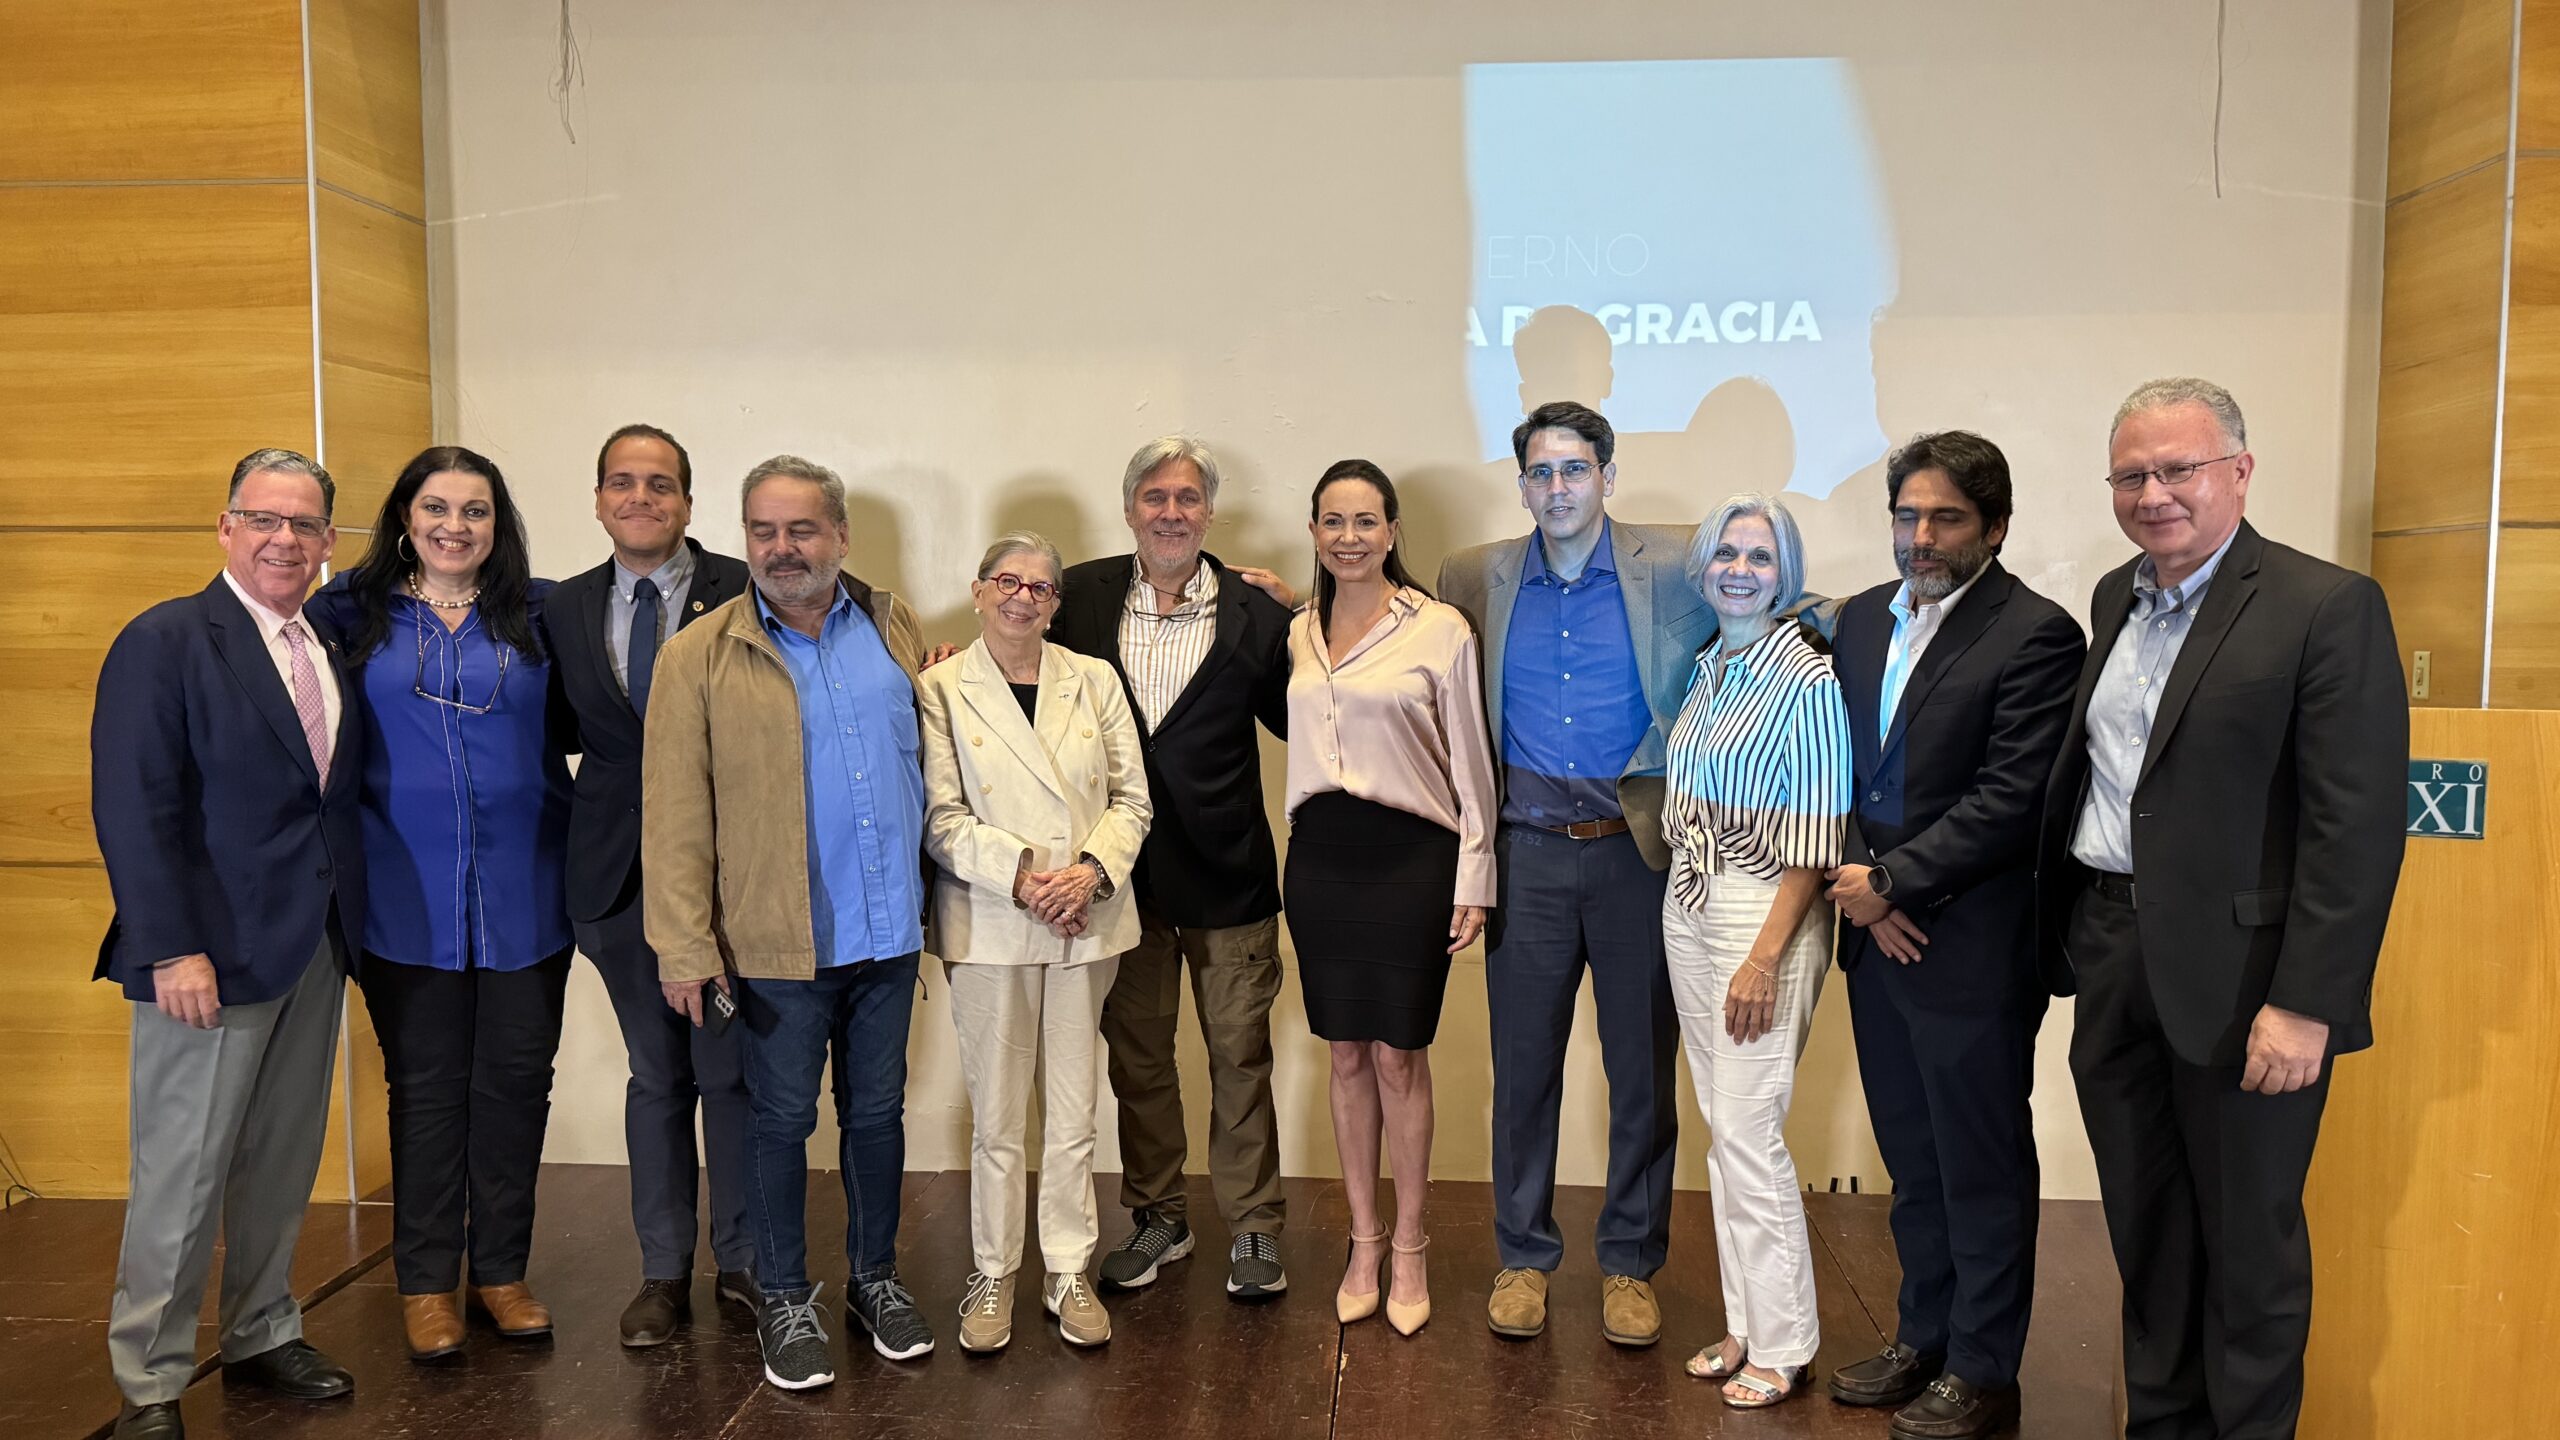 VTG: El proyecto de María Corina Machado para la transformación del país (TRADUCCIÓN)